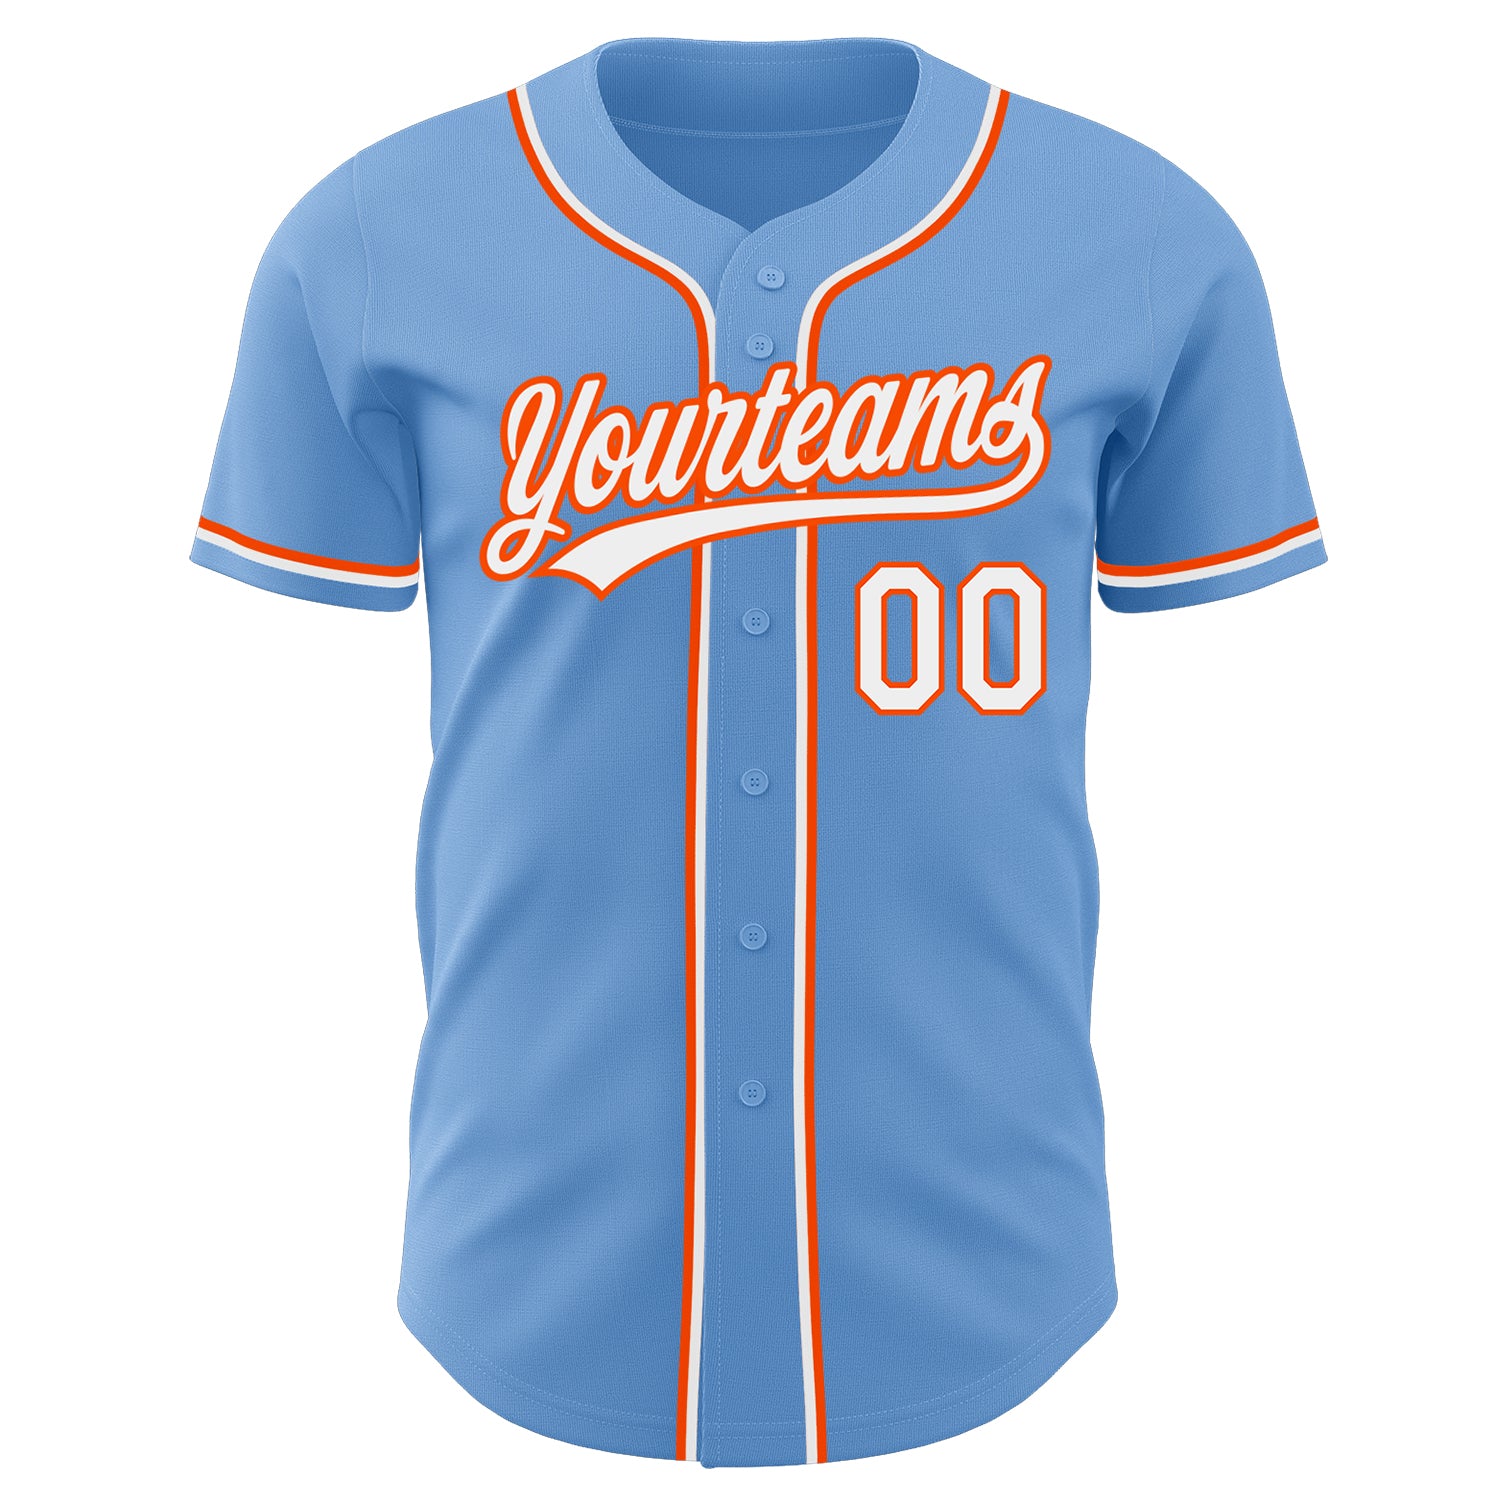 Custom-Light-Blue-White-Orange-Baseball-MLB-Jersey-2765